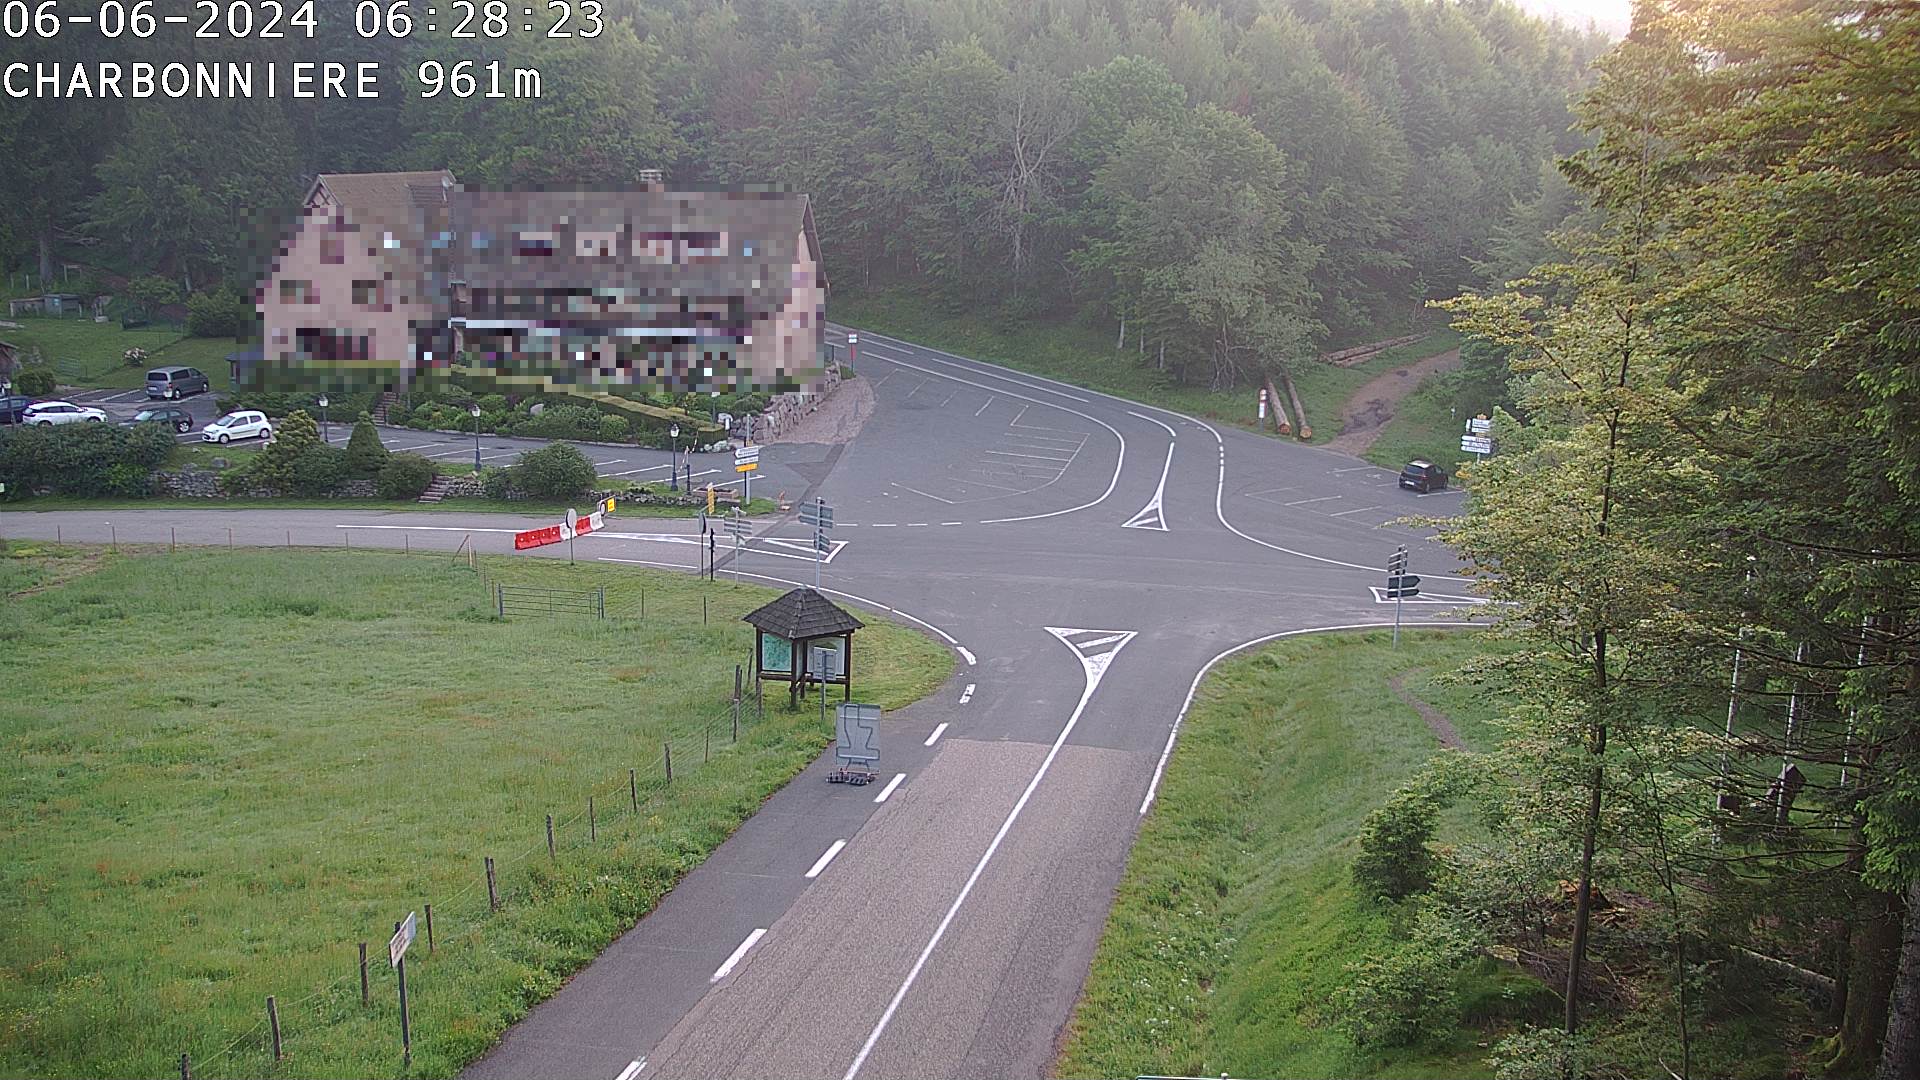 <h2>Webcam du col de la Charbonnière dans les Vosges en direction de la station du Champ du feu. Vue sur le D214 et la Tour du Champ du feu. Col de montagne à 961 mètres d'altitude</h2>